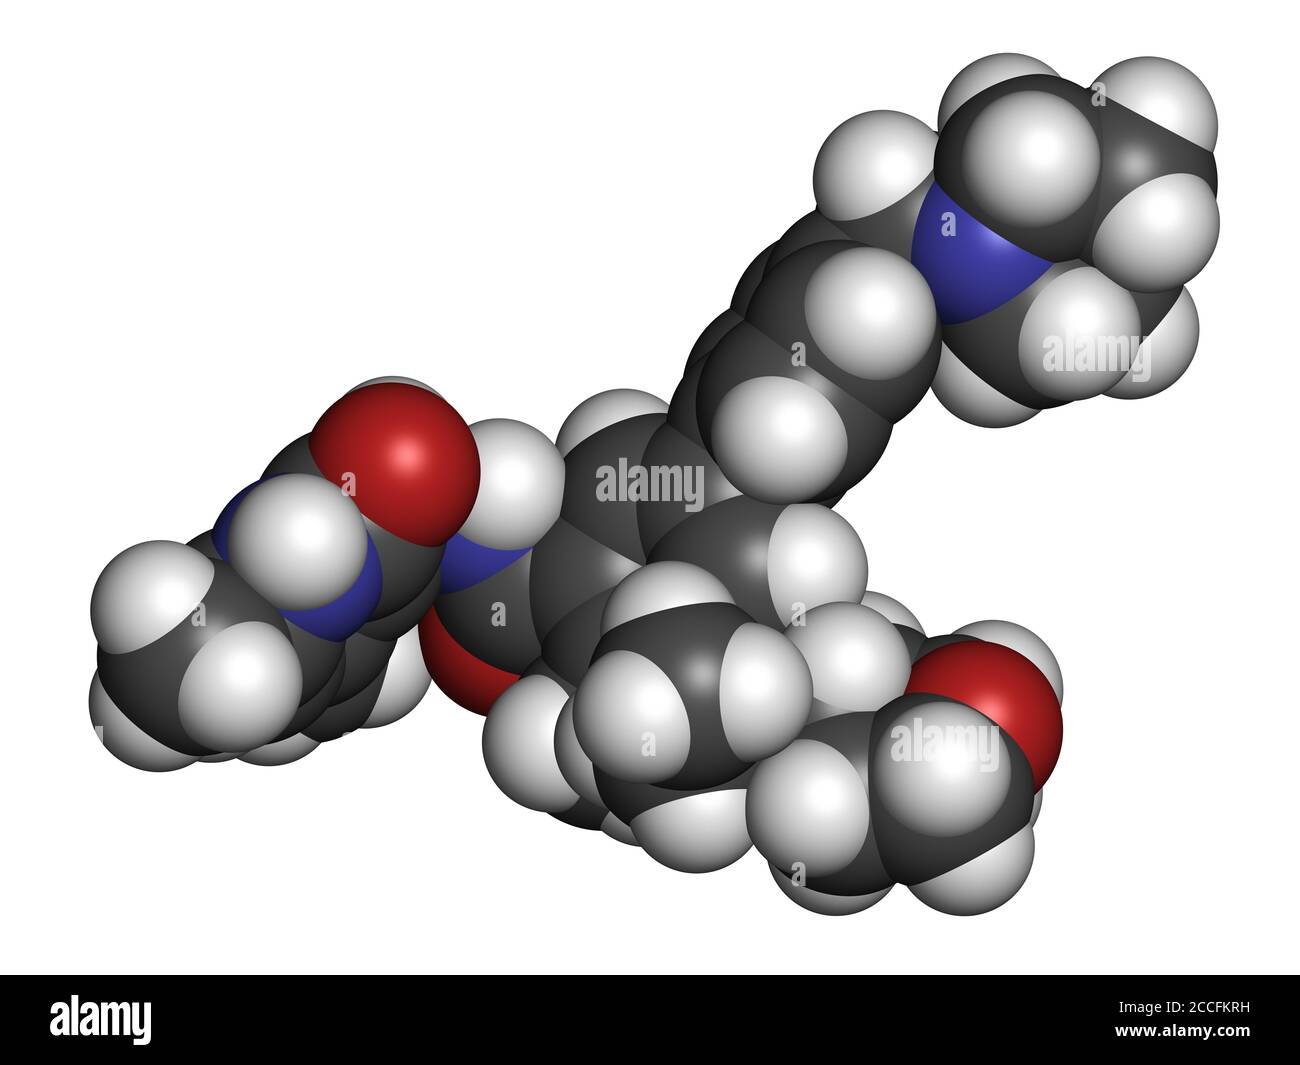 Tazemetostat cancro molecola di farmaco. Rendering 3D. Gli atomi sono rappresentati come sfere con codifica cromatica convenzionale: Idrogeno (bianco), carbonio (grigio), nit Foto Stock